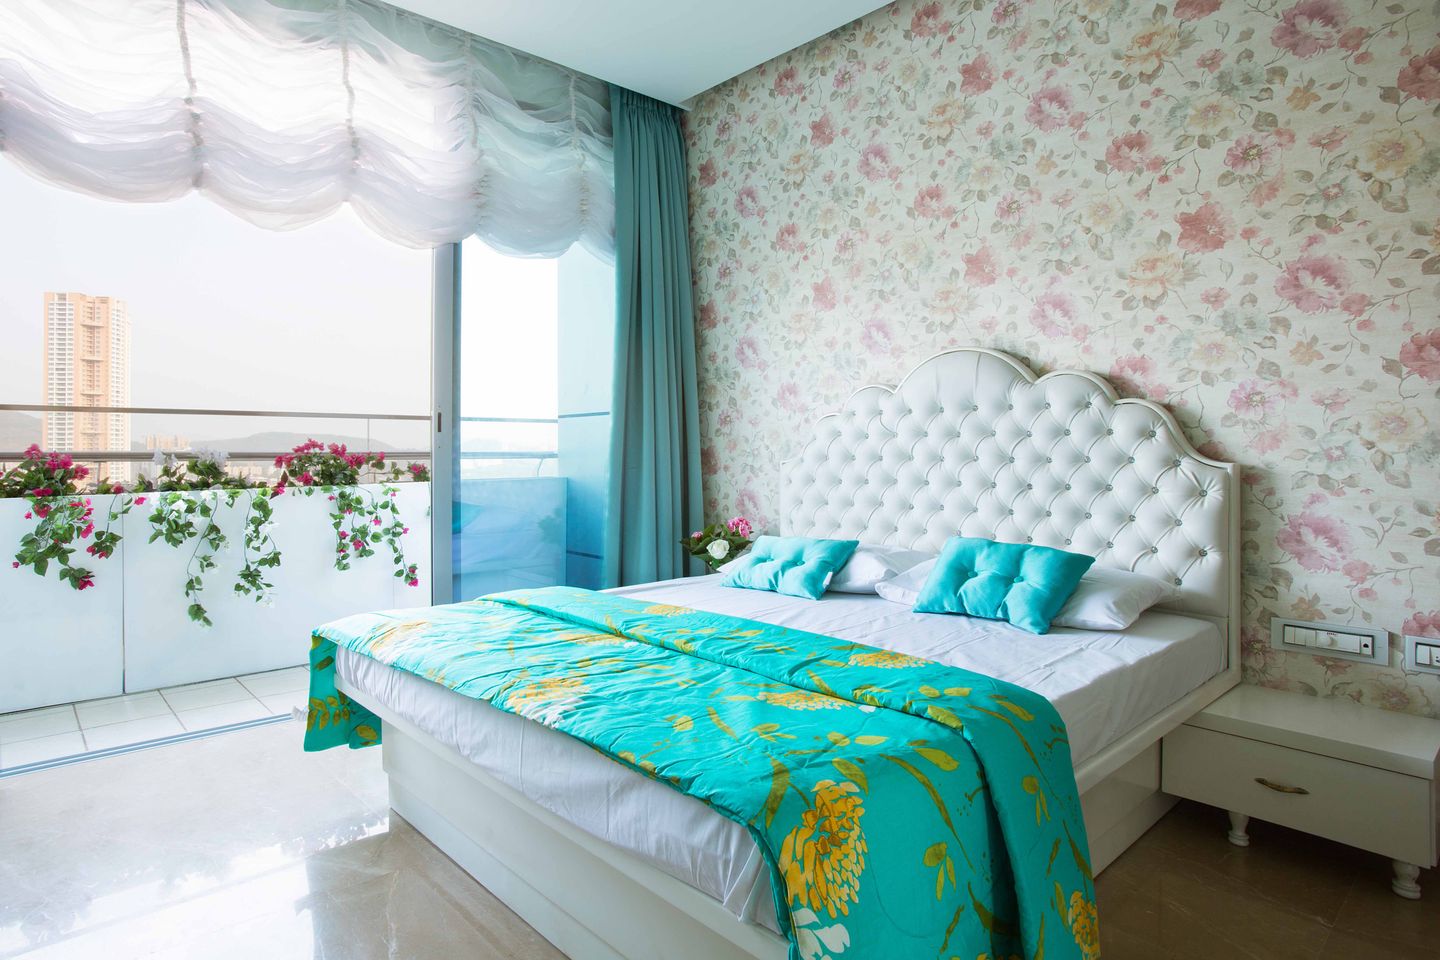 Kids Room Design With Floral Wallpaper - Livspace